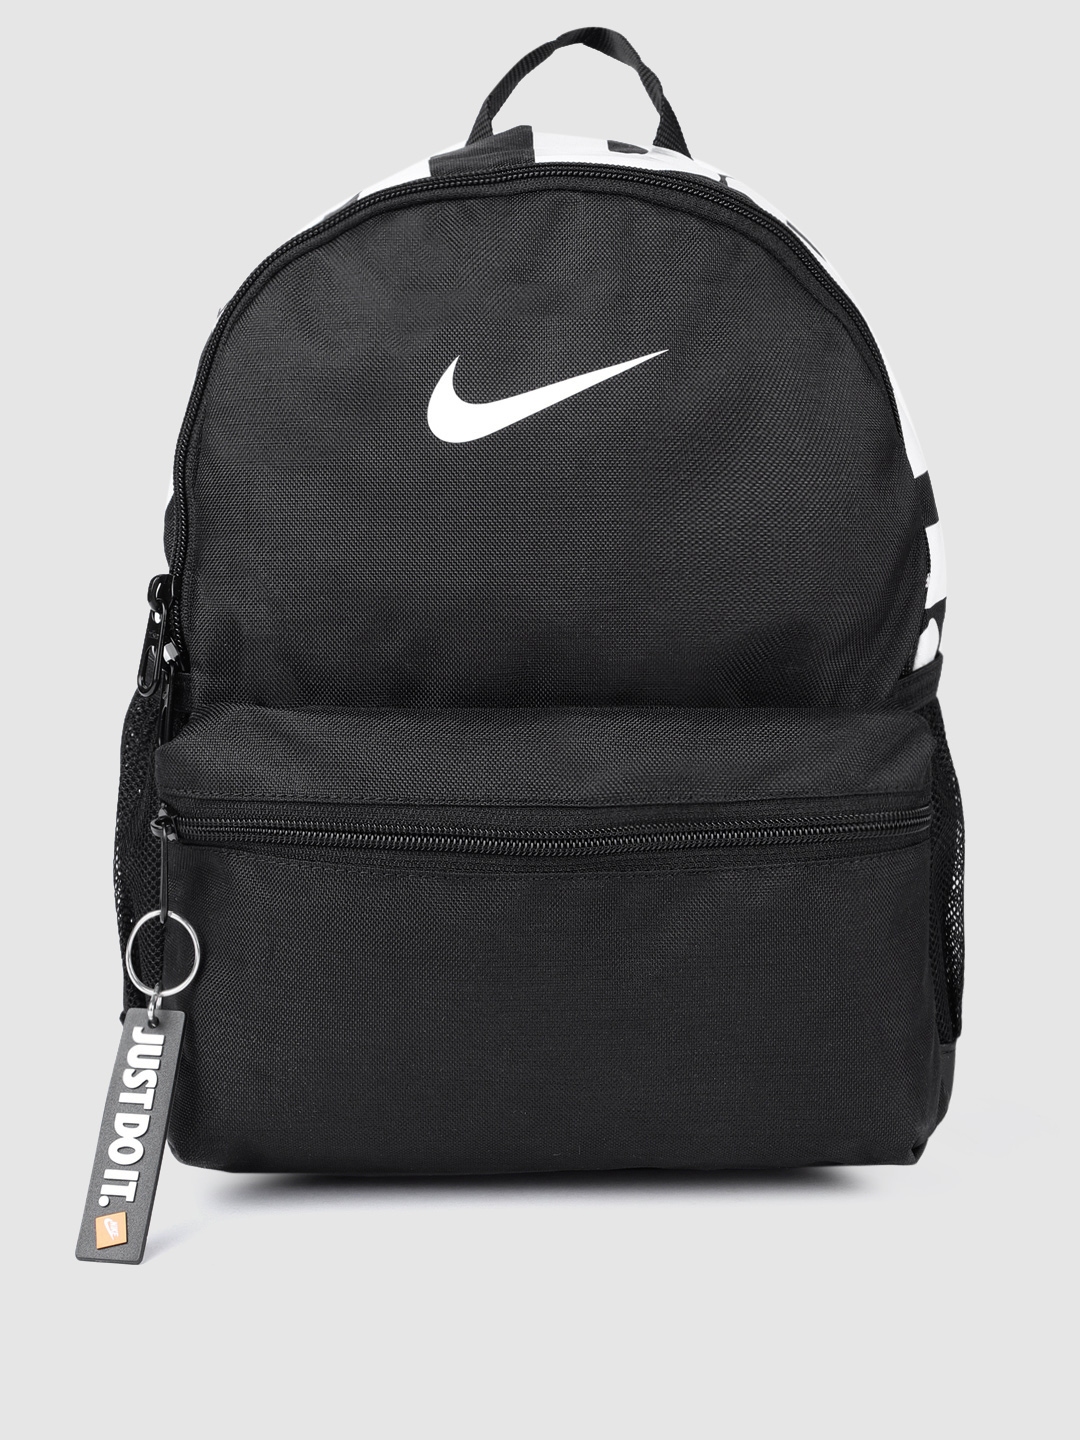 Buy Nike Unisex Black Brand Logo Backpack - Backpacks for Unisex Kids ...